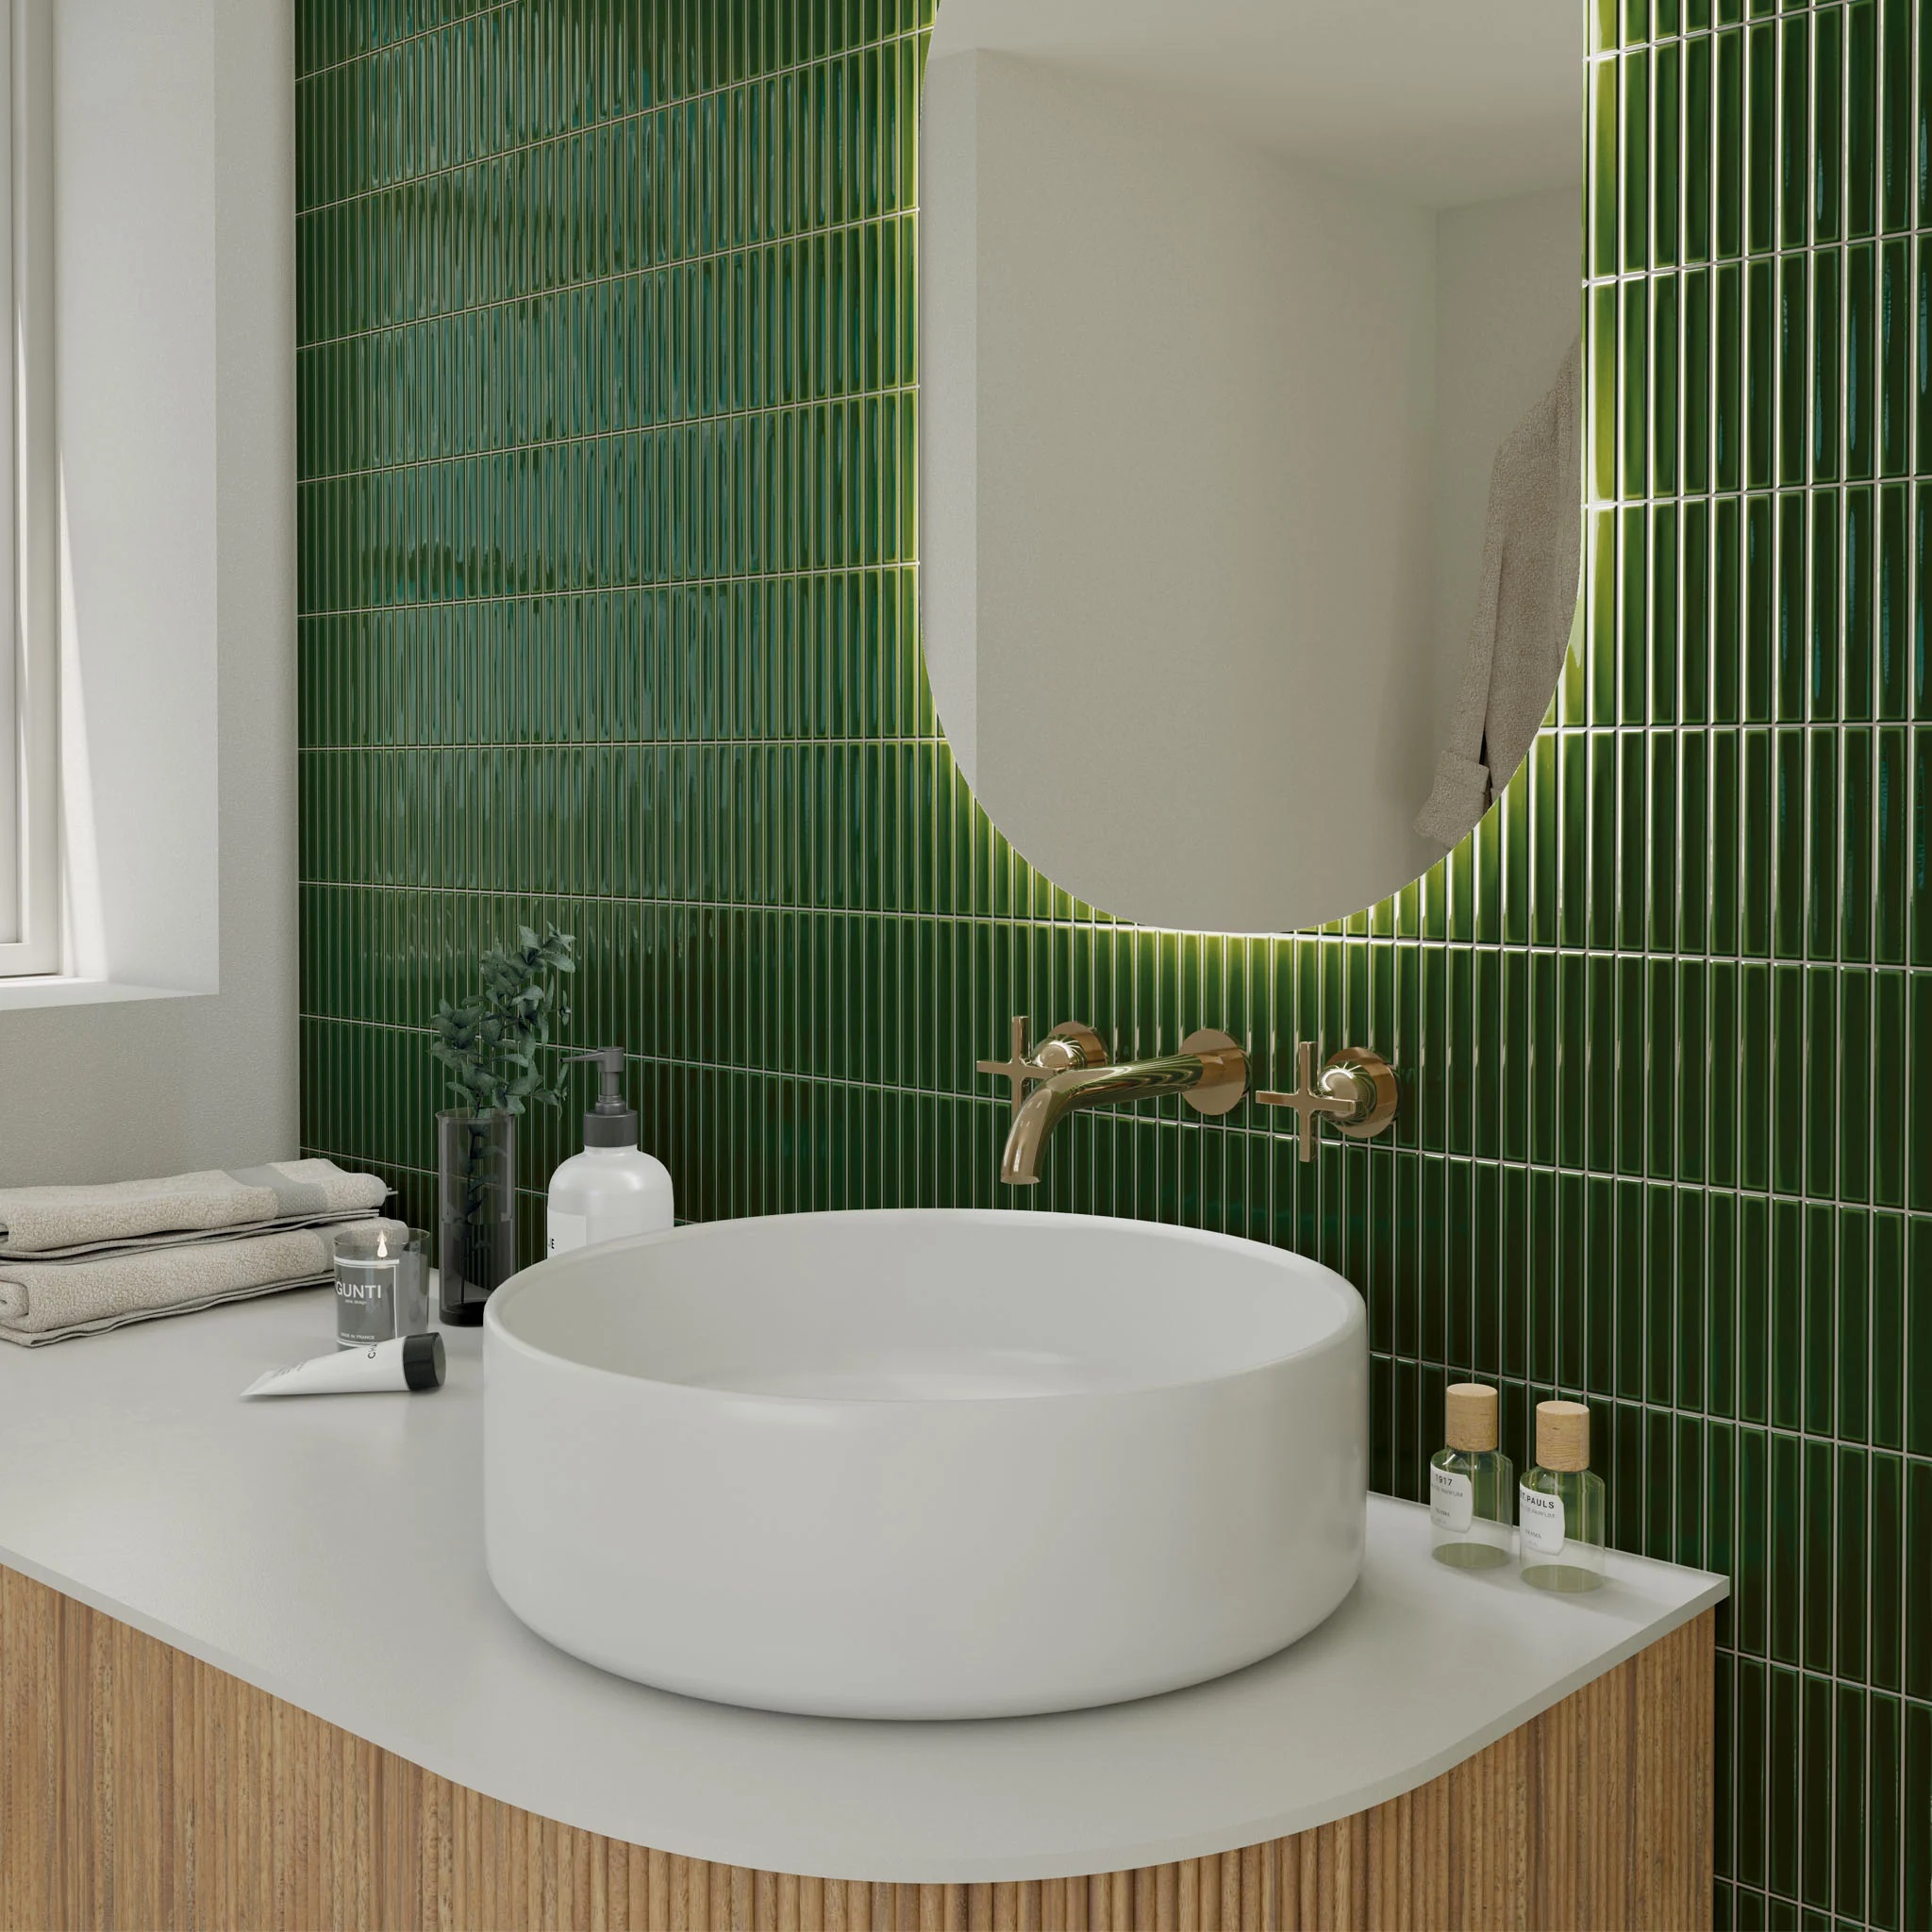 Trang trí không gian vệ sinh với gạch thẻ mosaic màu xanh lá mạ